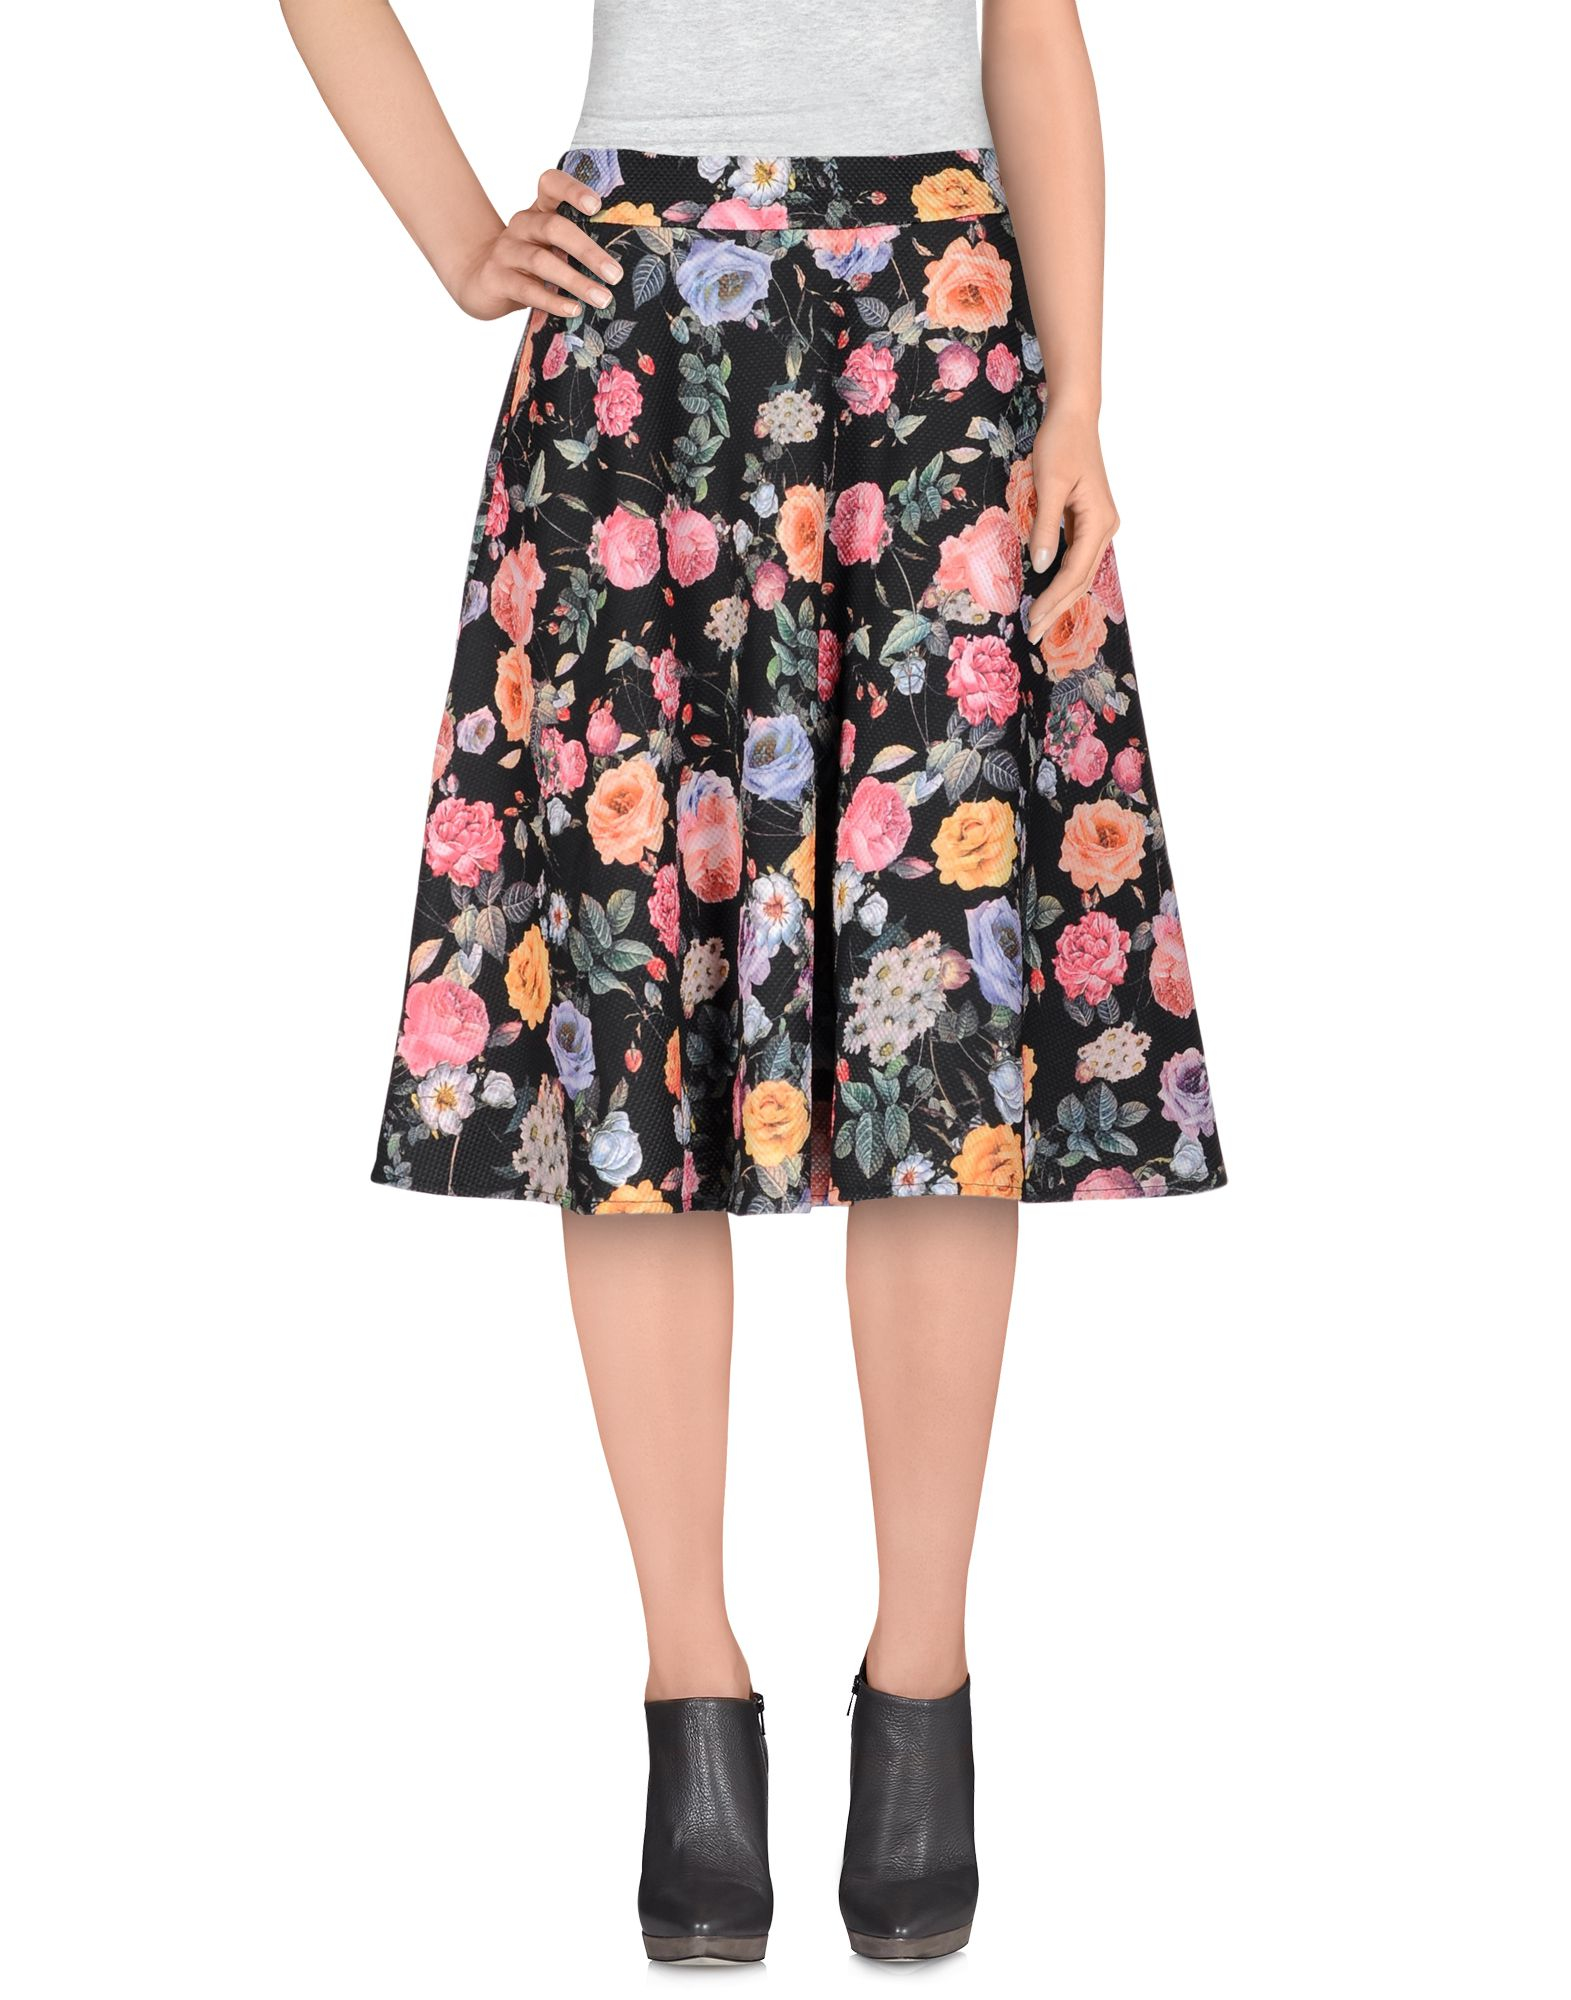 Lyst - Cutie Knee Length Skirt in Black